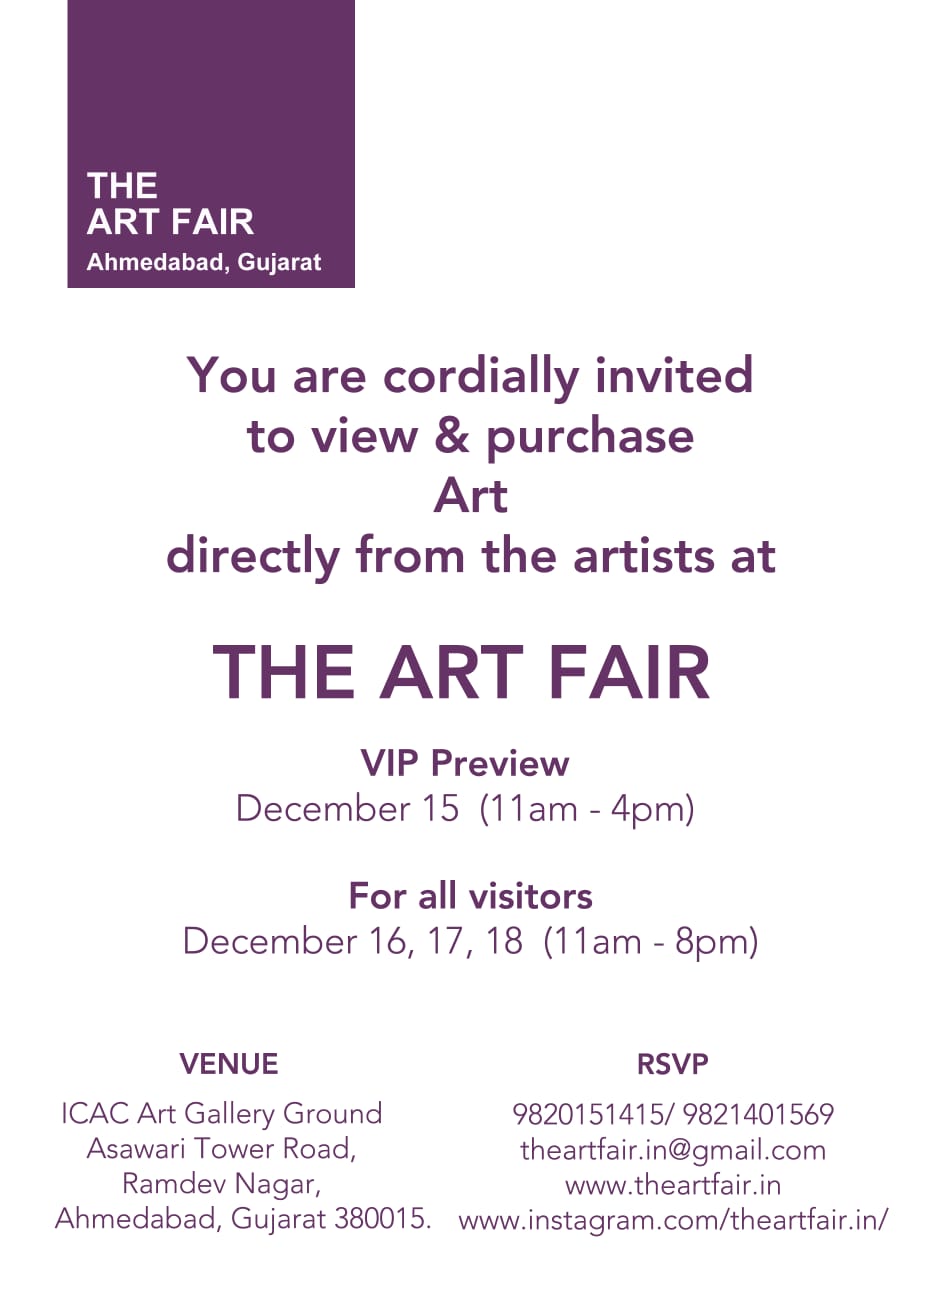 https://creativeyatra.com/wp-content/uploads/2022/12/The-Art-Fair.jpg